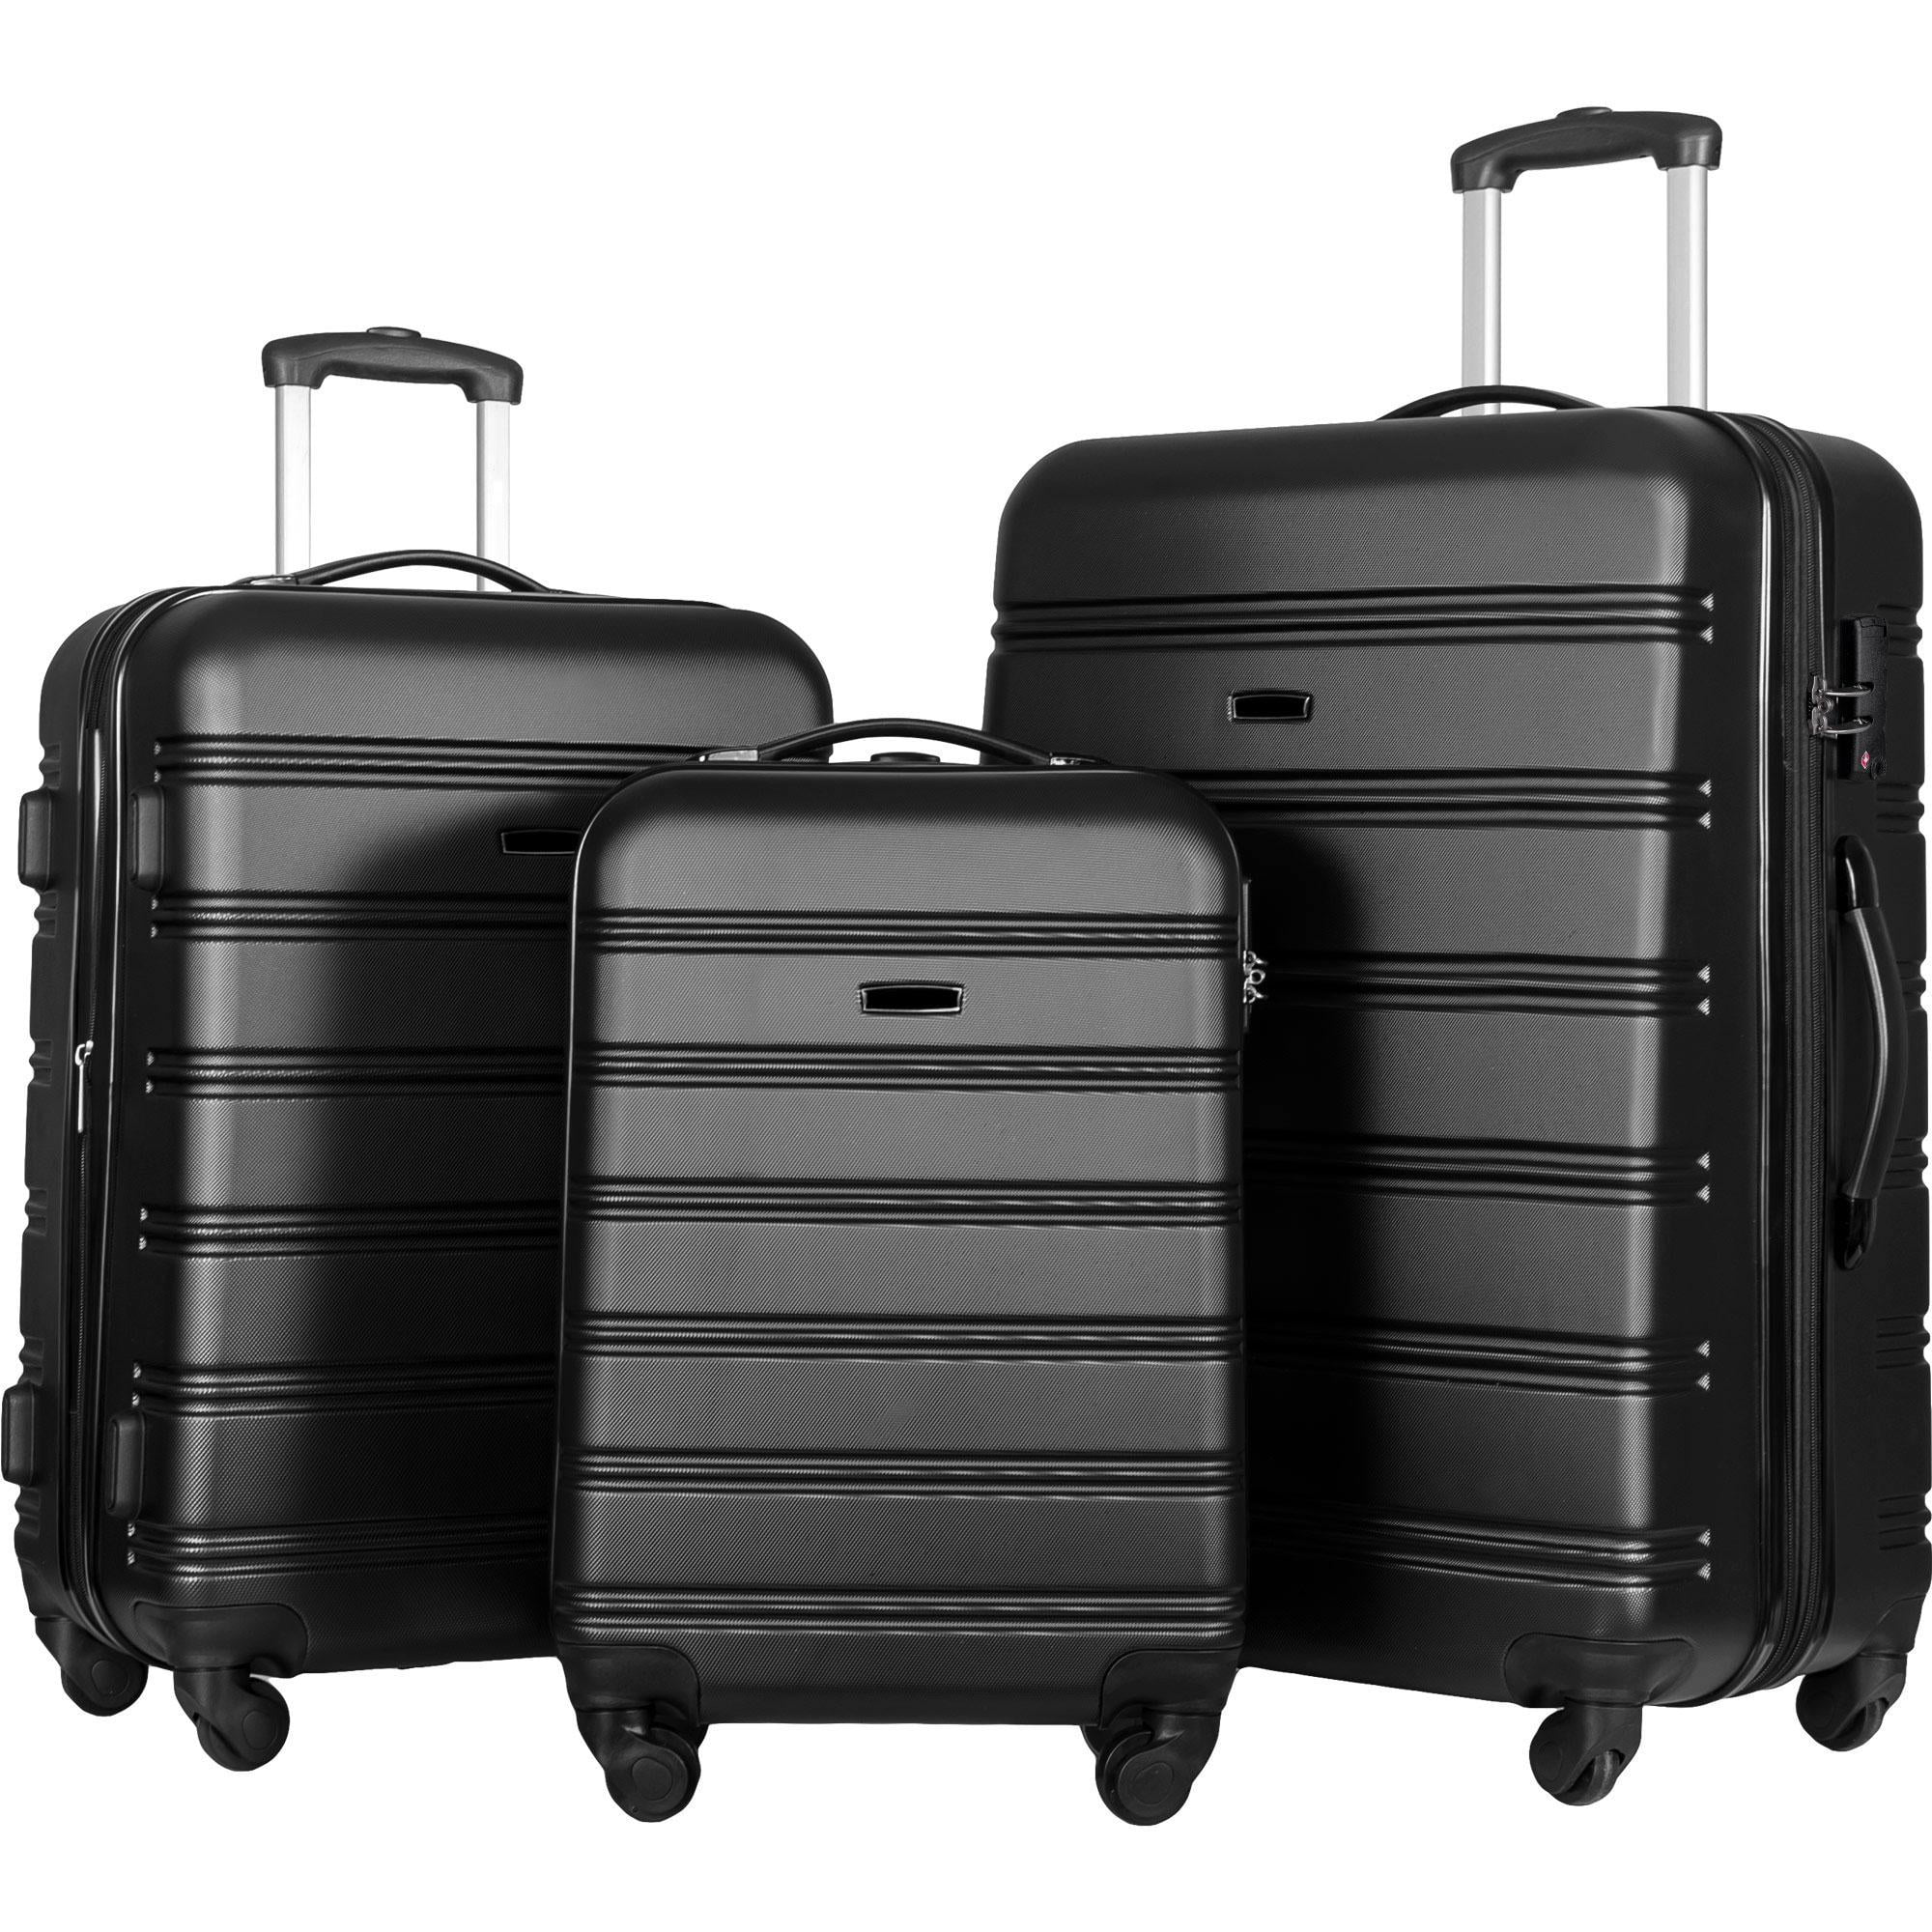 travel house luggage sets